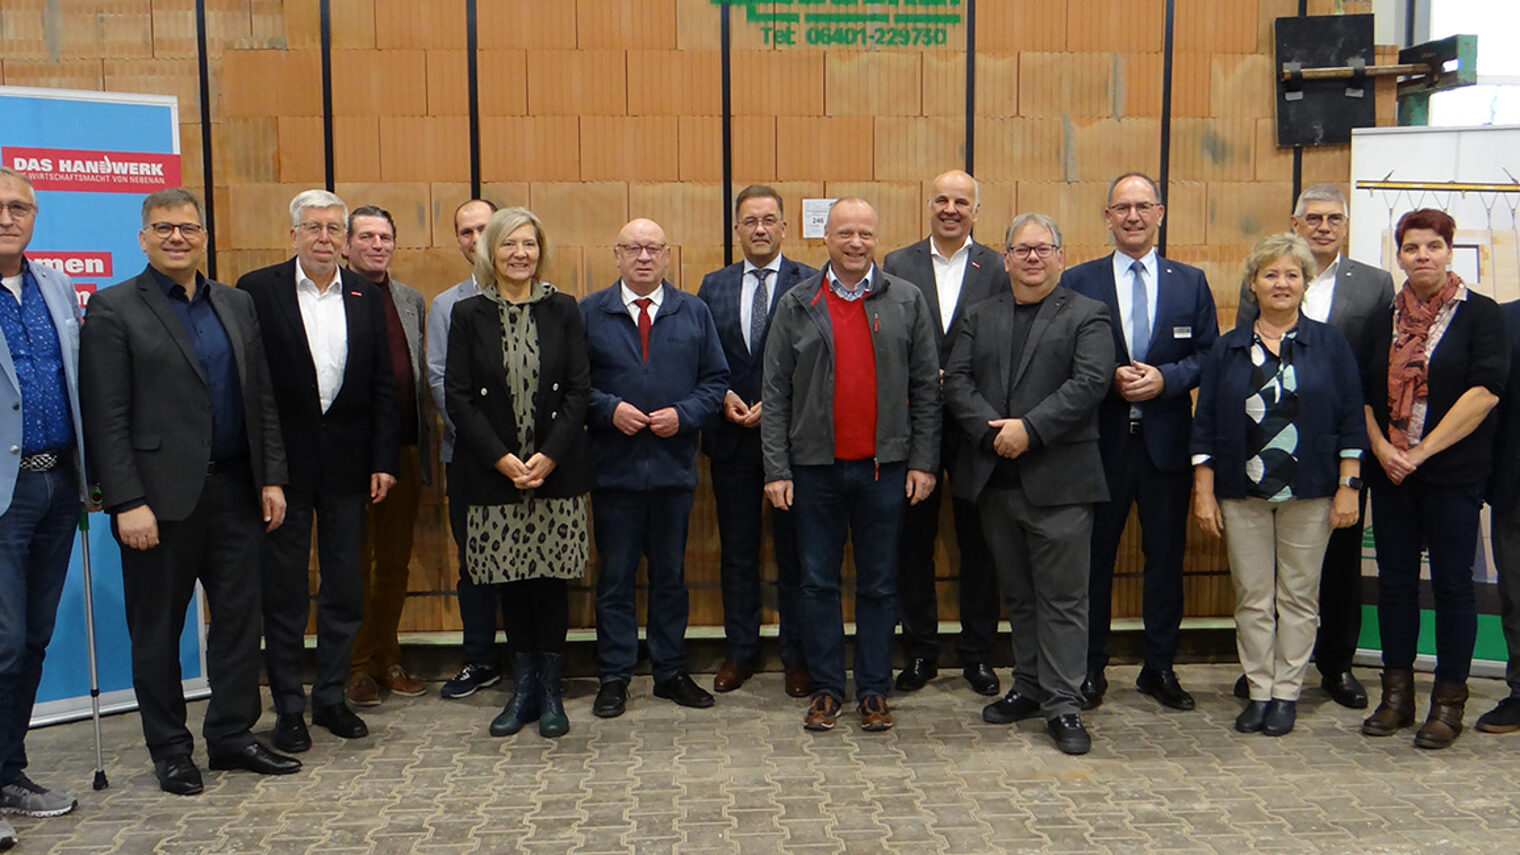 Gruppenfoto der Teilnehmenden der 17. Regionalpolitischen Gesprächsrunde auf dem Werksgelände der Firma Becker‐System‐Wandbau GmbH & Co. KG.